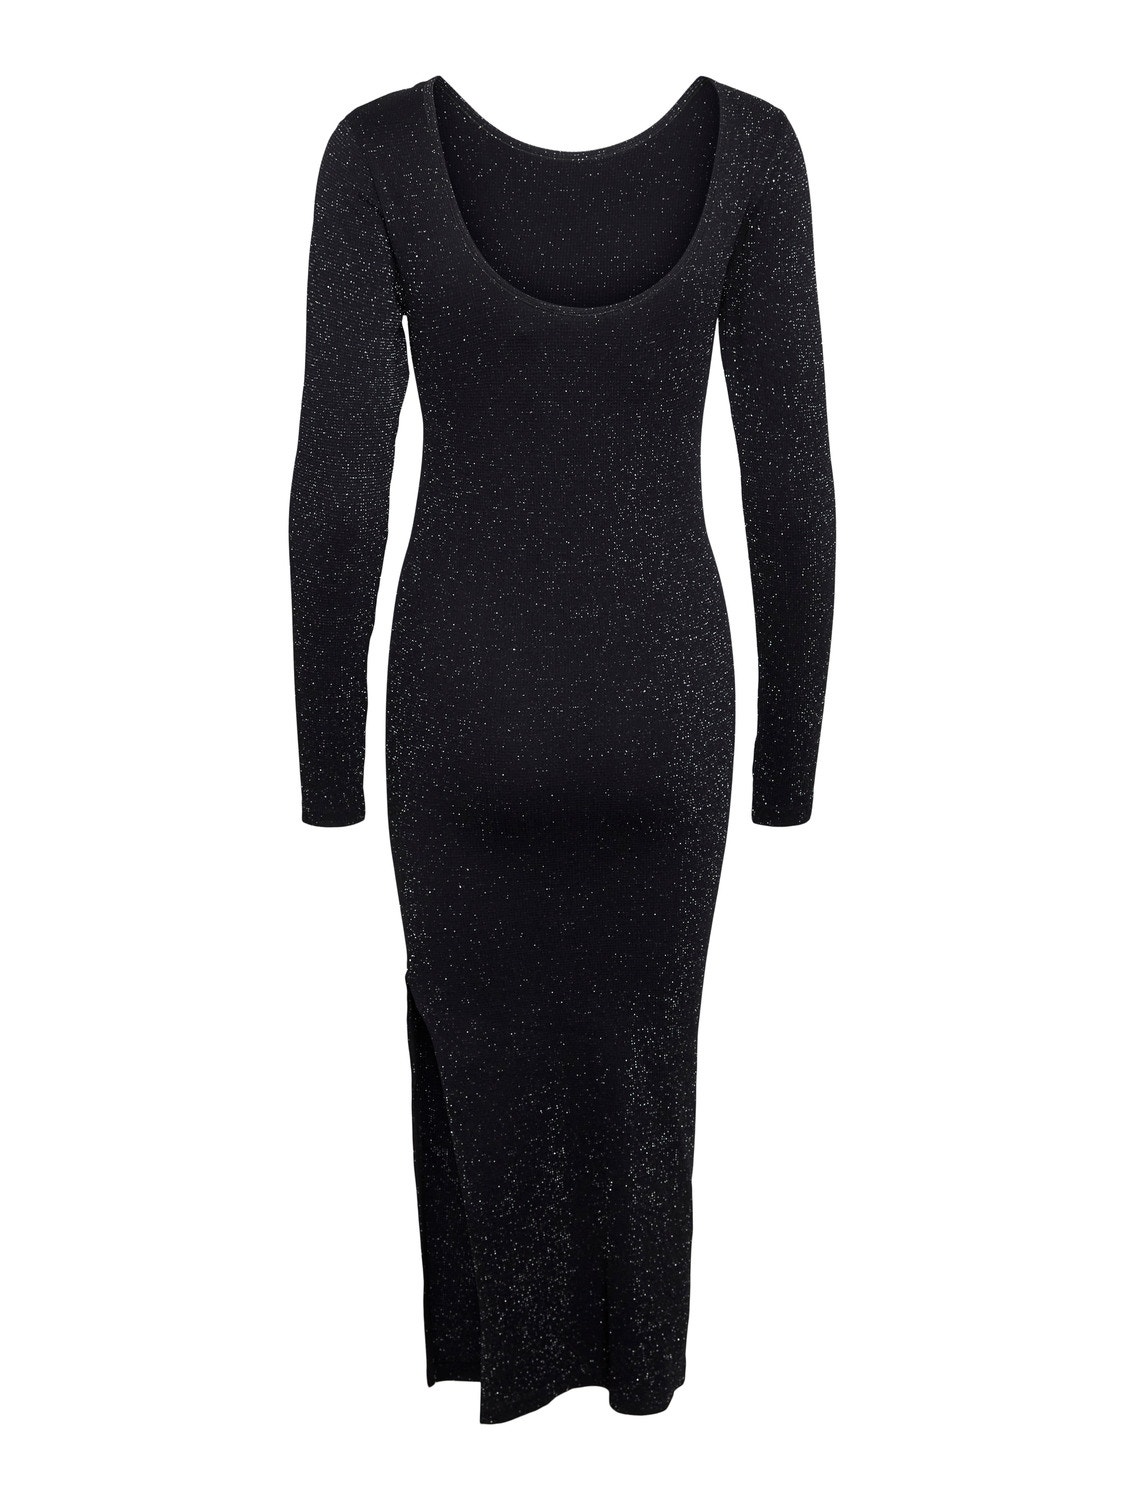 Vero Moda VMHARTLEY Long dress -Black - 10298456